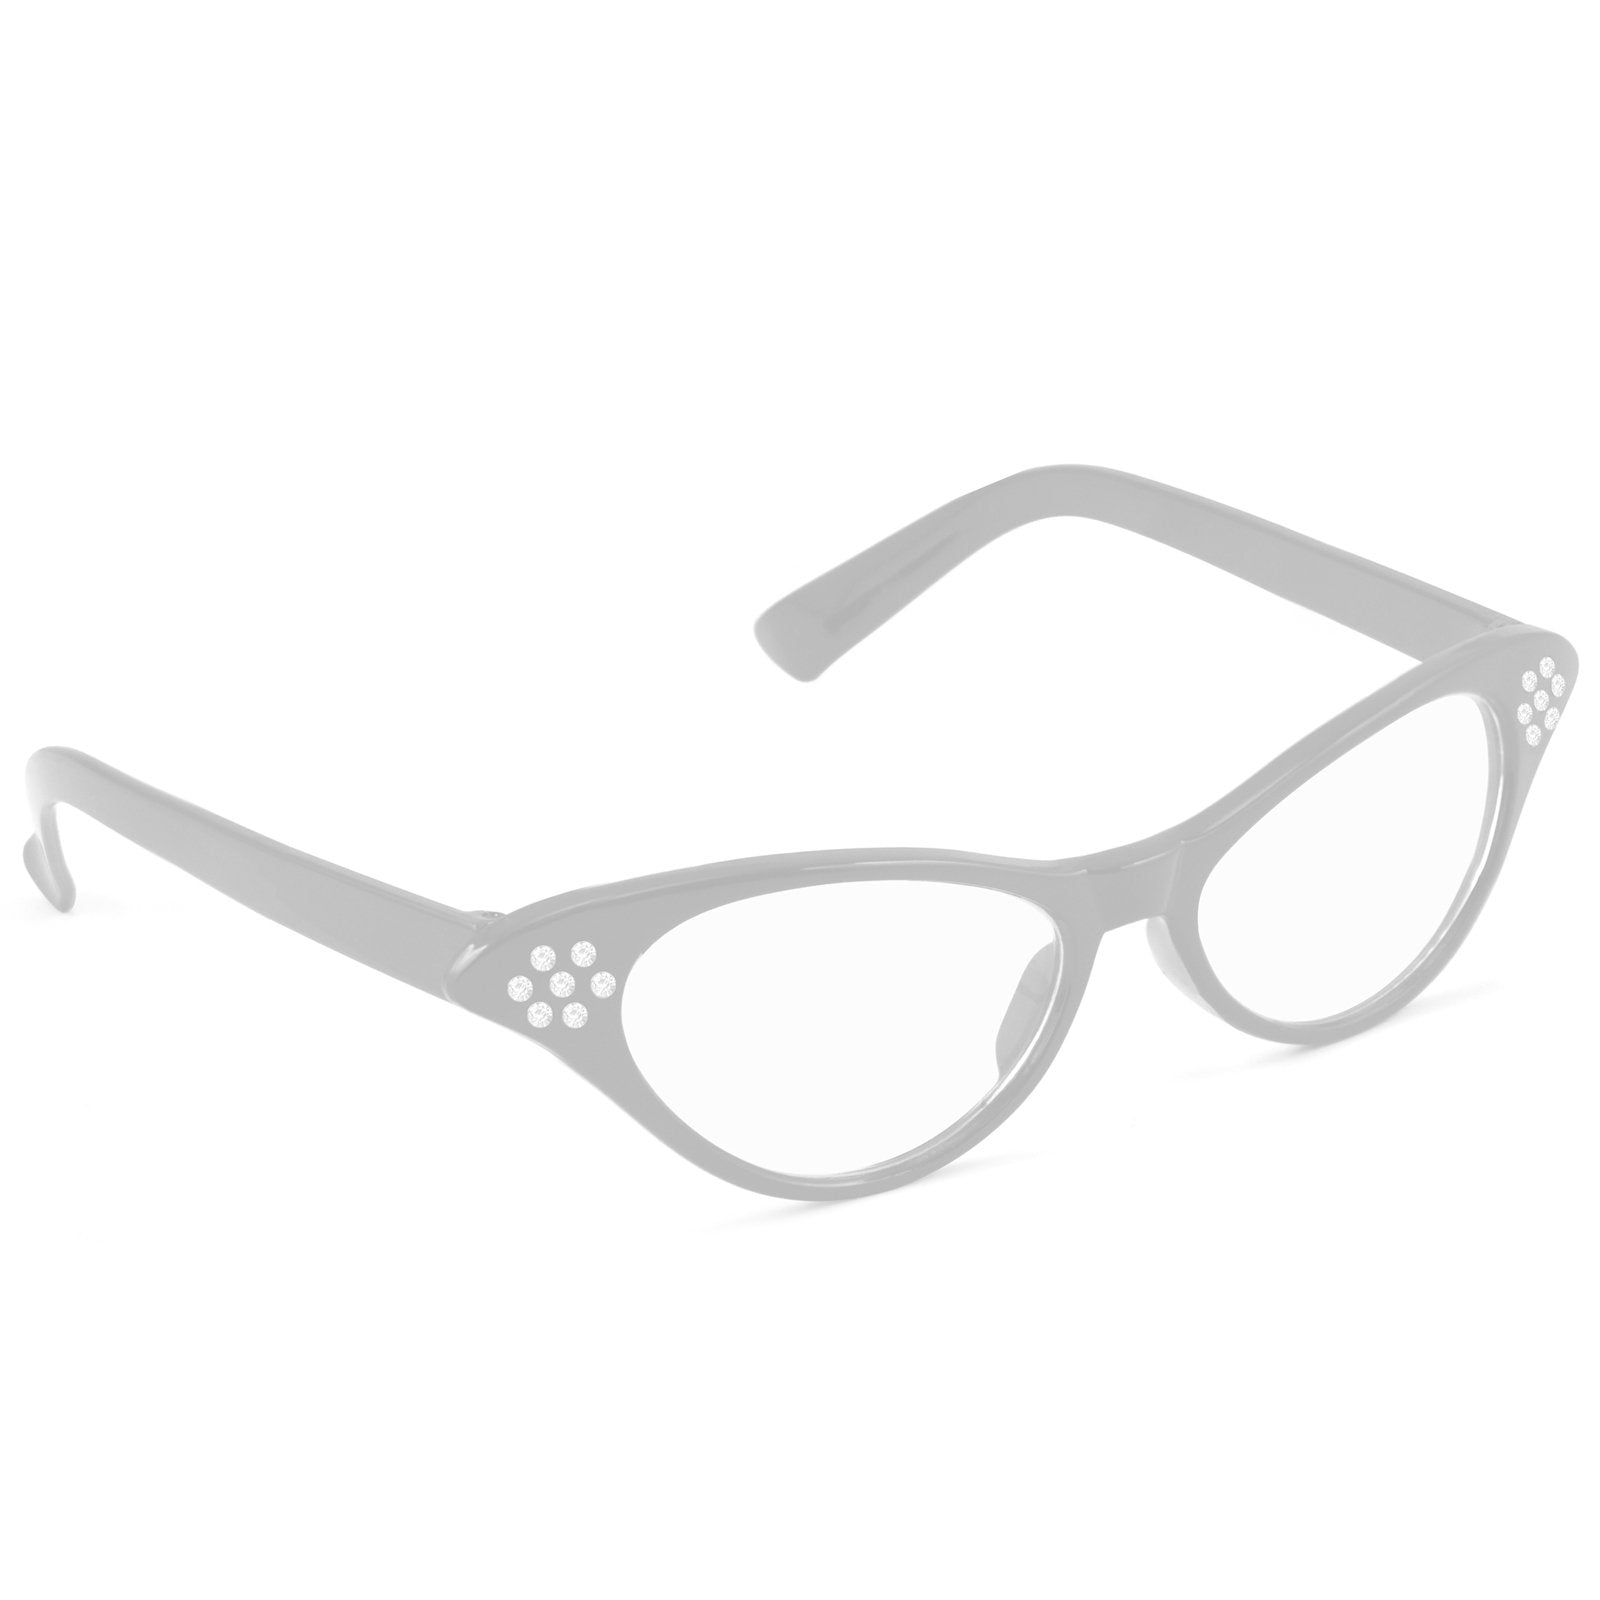 Glasses 1950s Rhinestone White